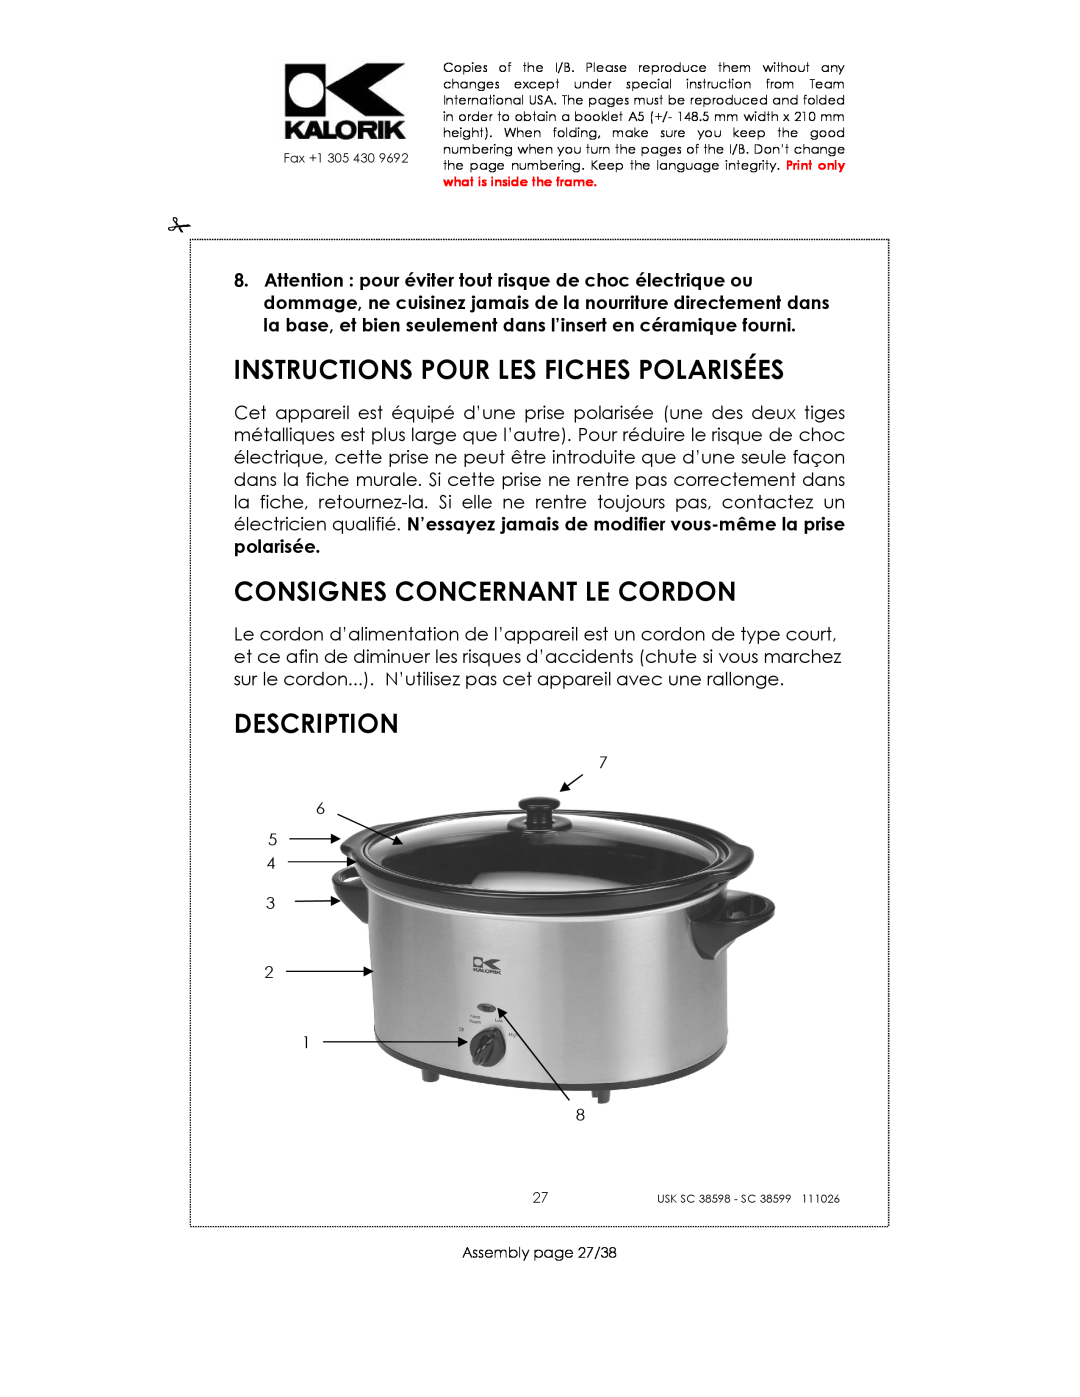 Kalorik 38599 Instructions Pour Les Fiches Polarisées, Consignes Concernant Le Cordon, Description, Assembly page 27/38 